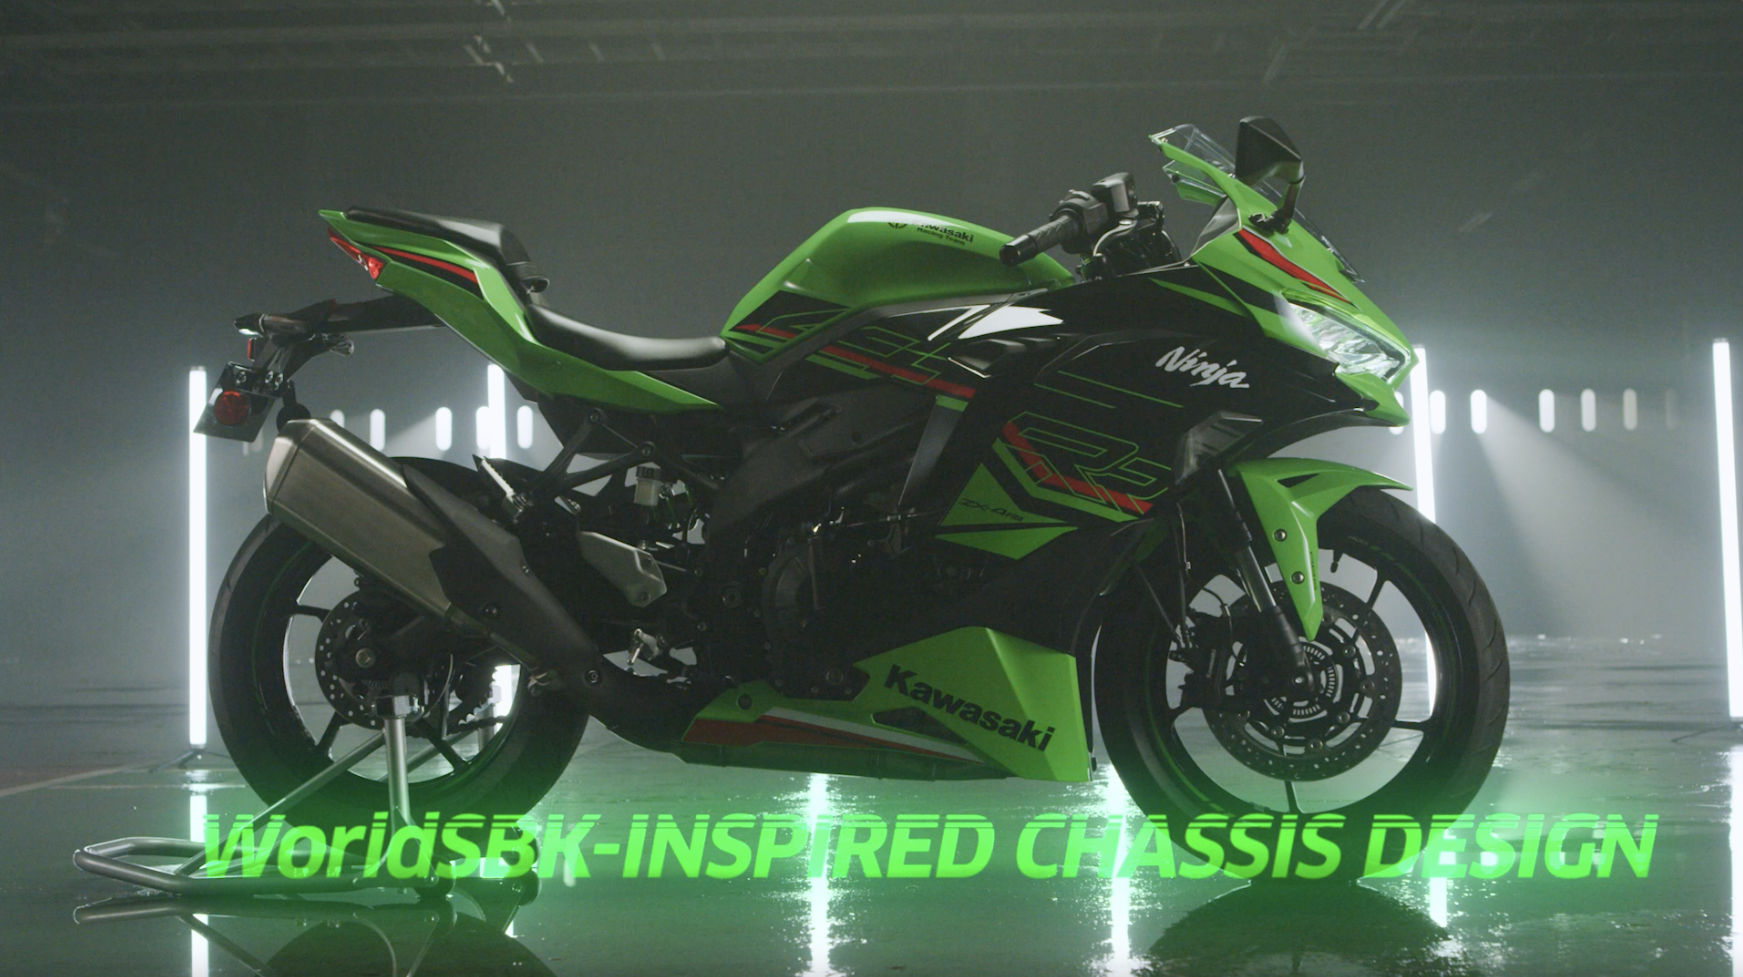 Kawasaki Ninja ZX-4R |スーパースポーツモデル|並列4気筒エンジンを 